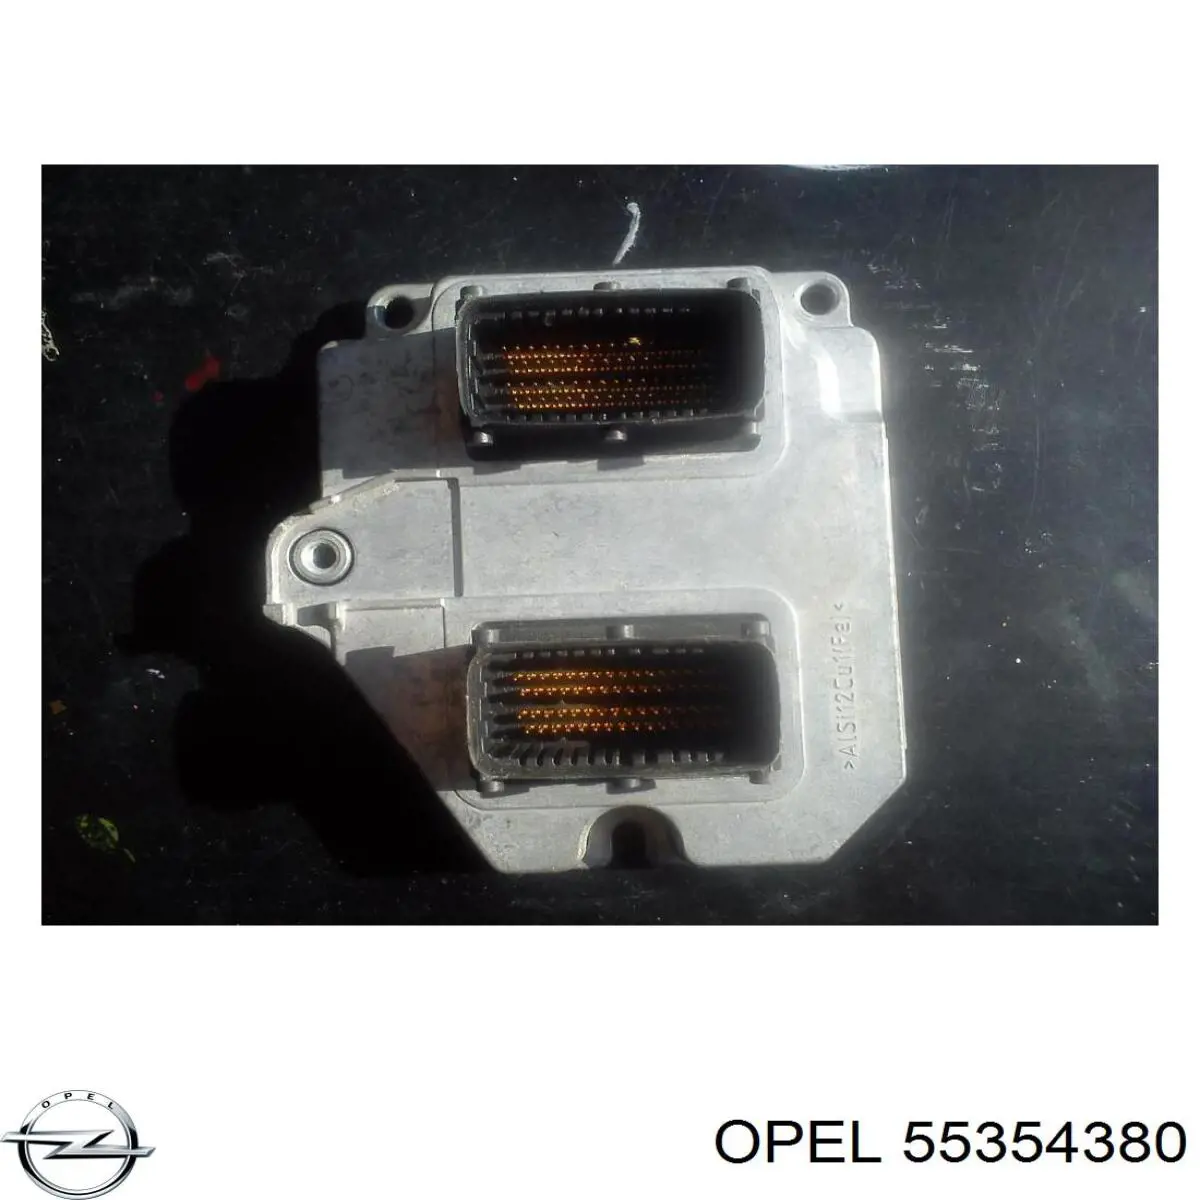 Centralina Del Motor / Modulo De control Del Motor (ecu) para Opel Vectra 